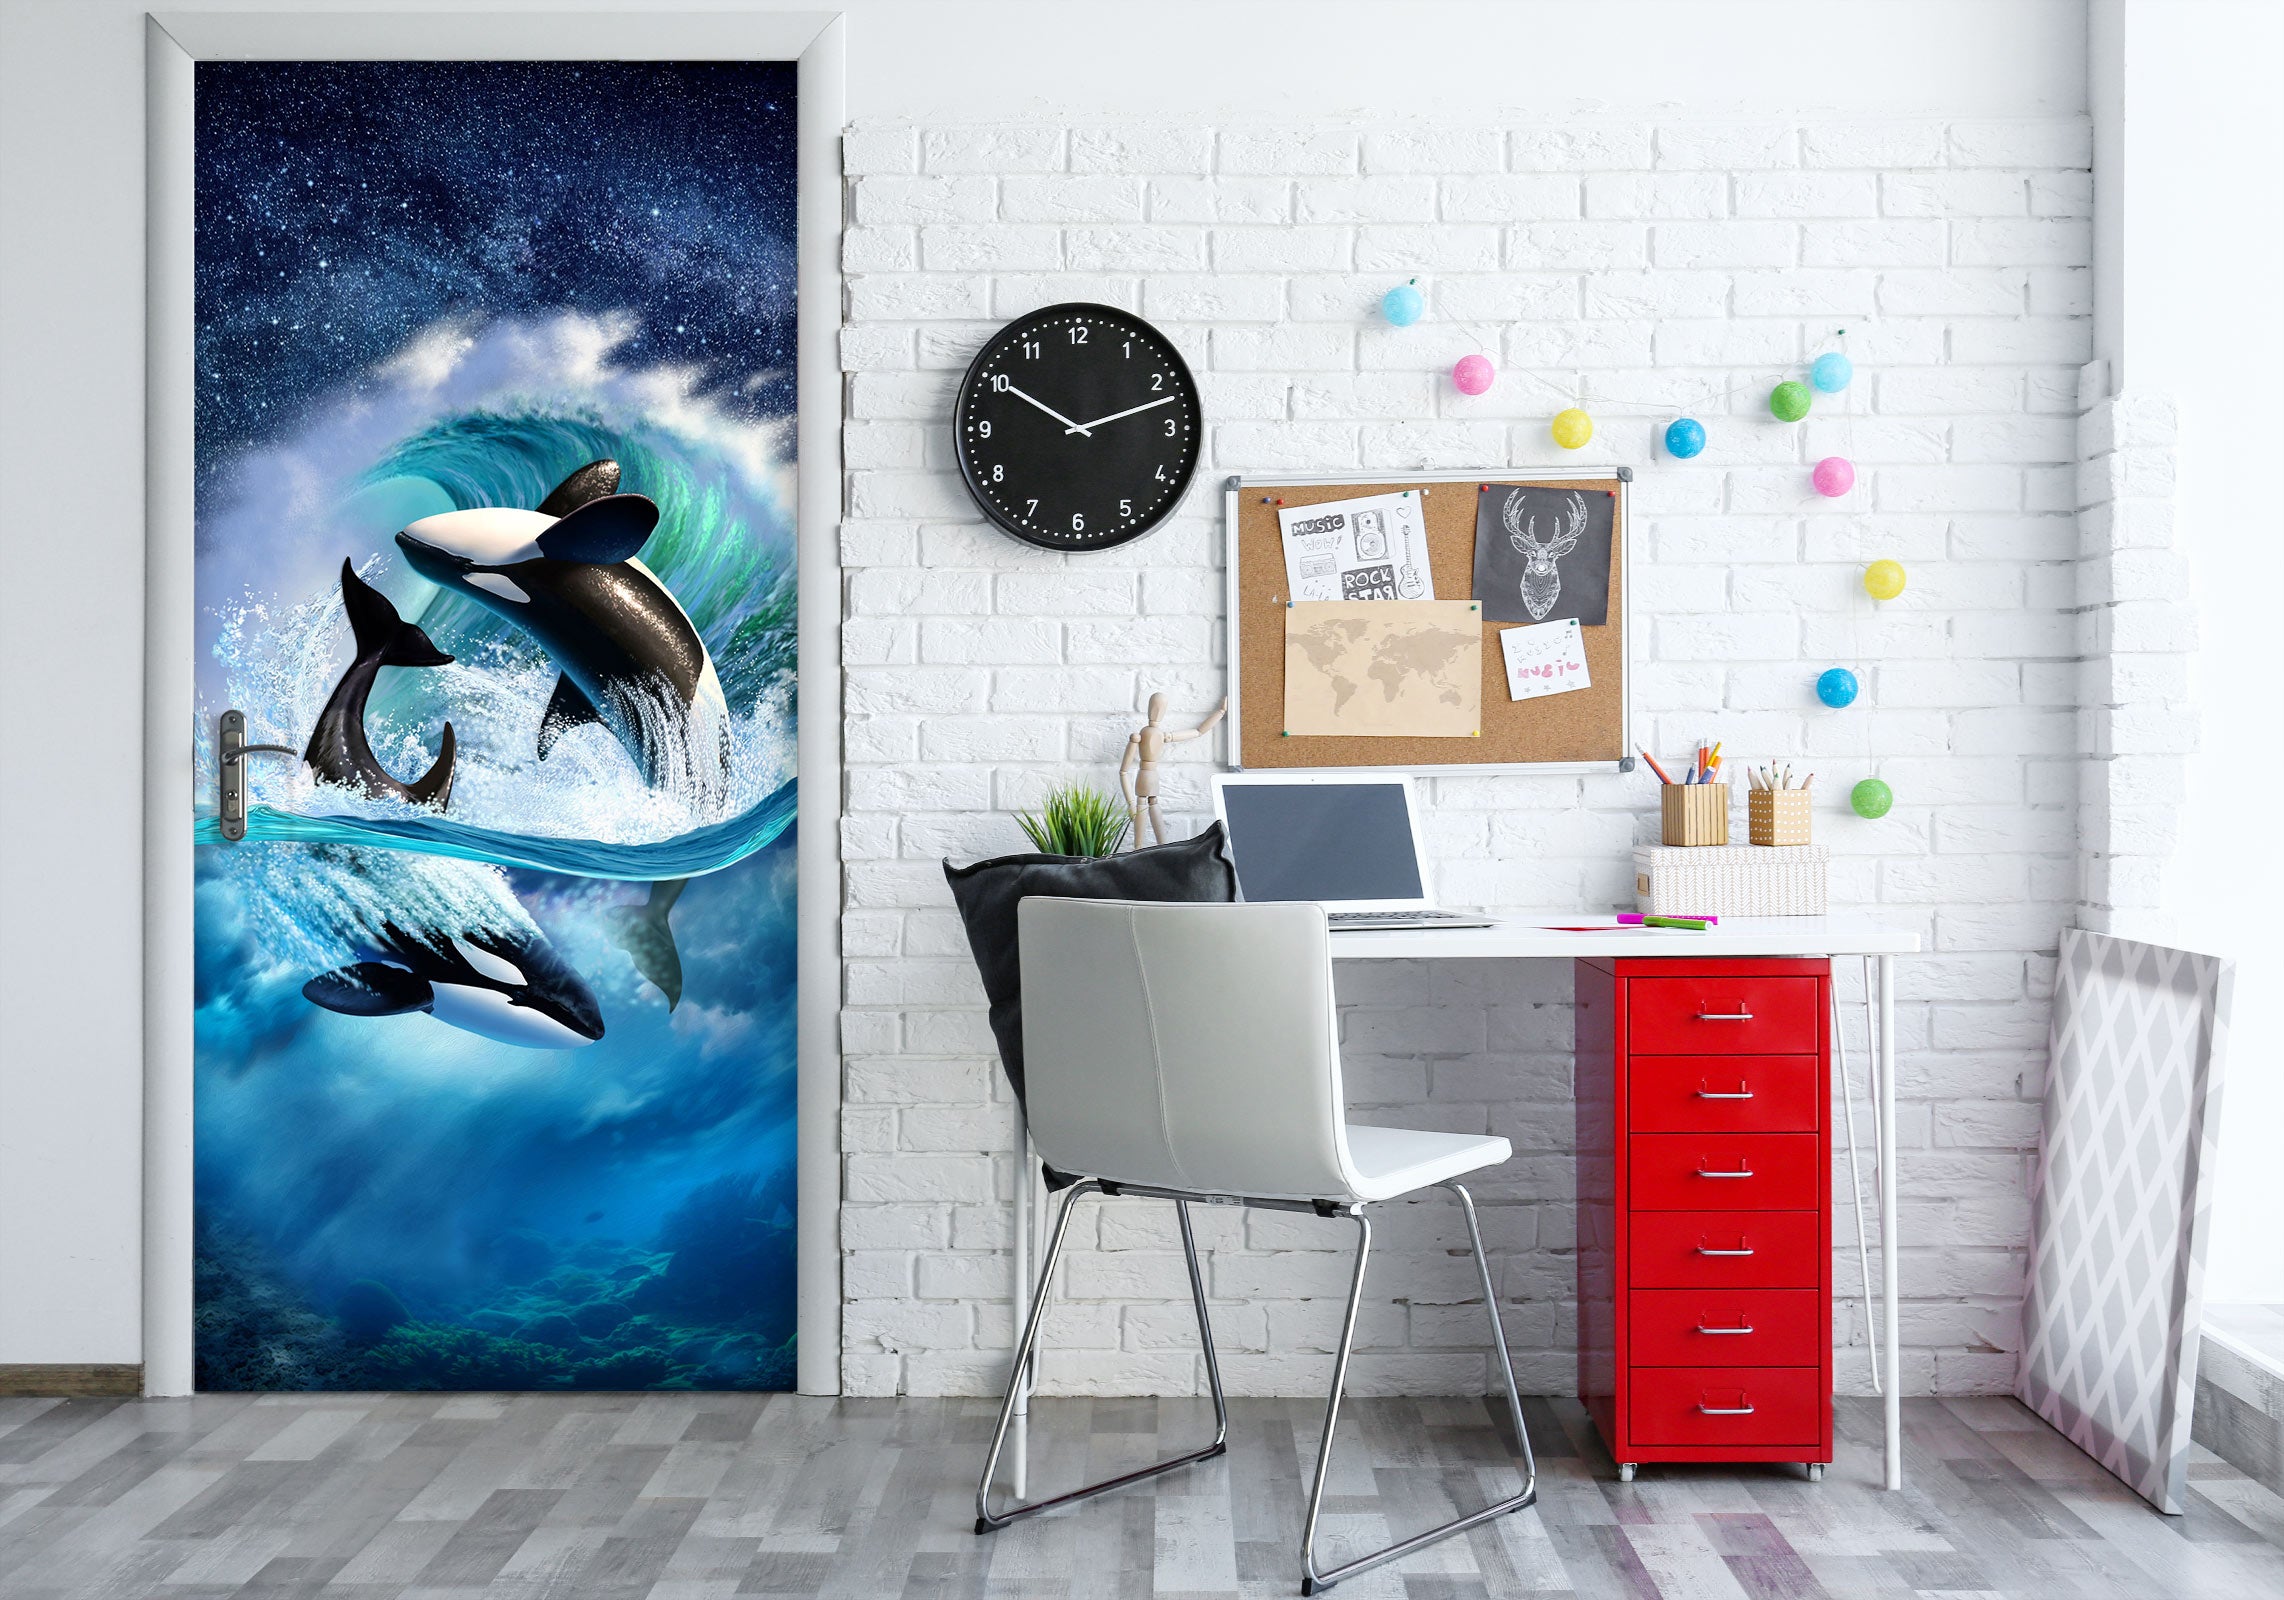 3D Waves Whale 112144 Jerry LoFaro Door Mural